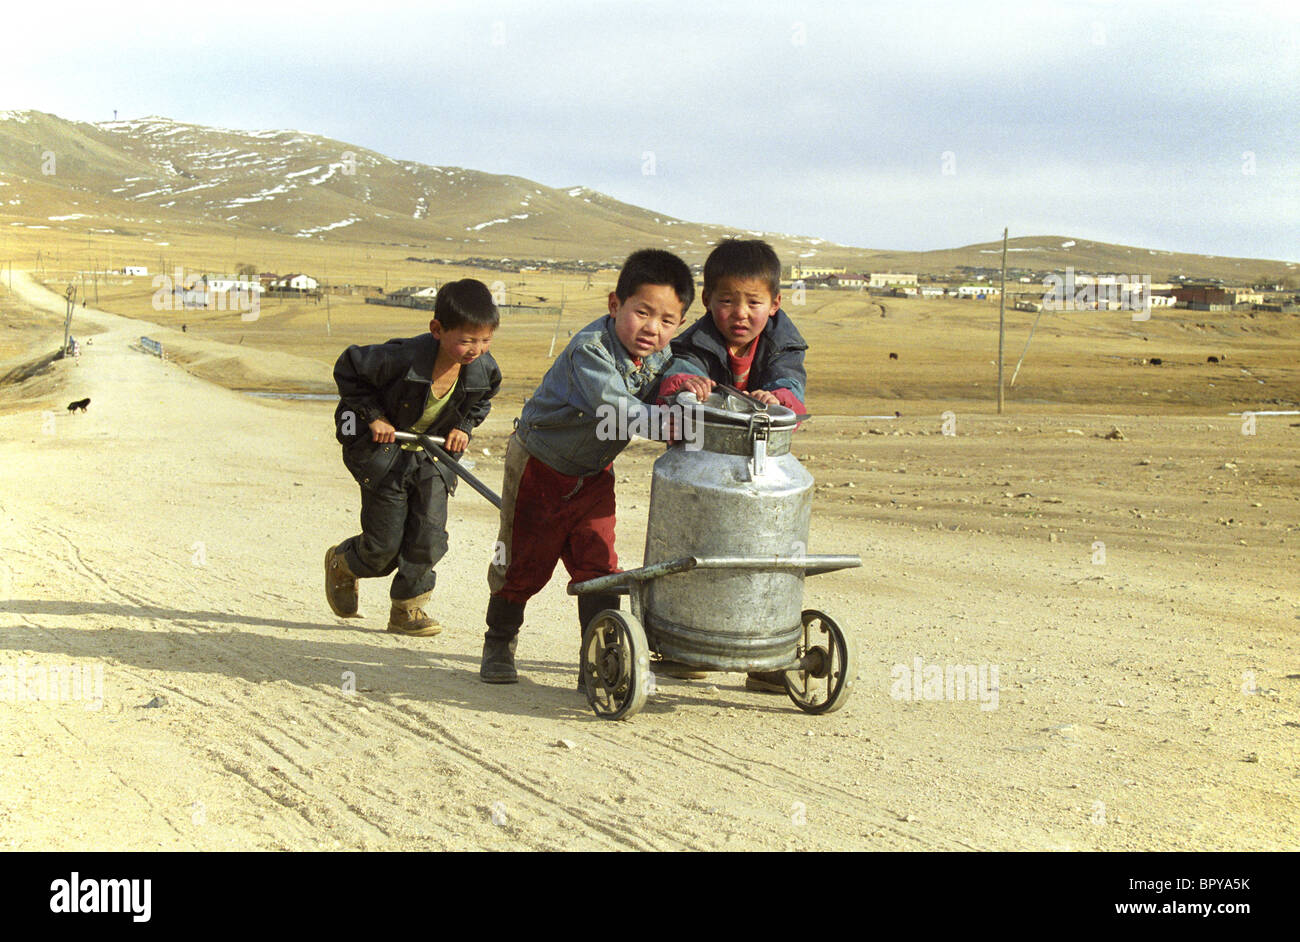 Mongolia mongolie Mongolie vestito tradizionale bambini nativi di portare un po' di acqua alla home Corvée d'eau pour les enfants de Mongolie Foto Stock